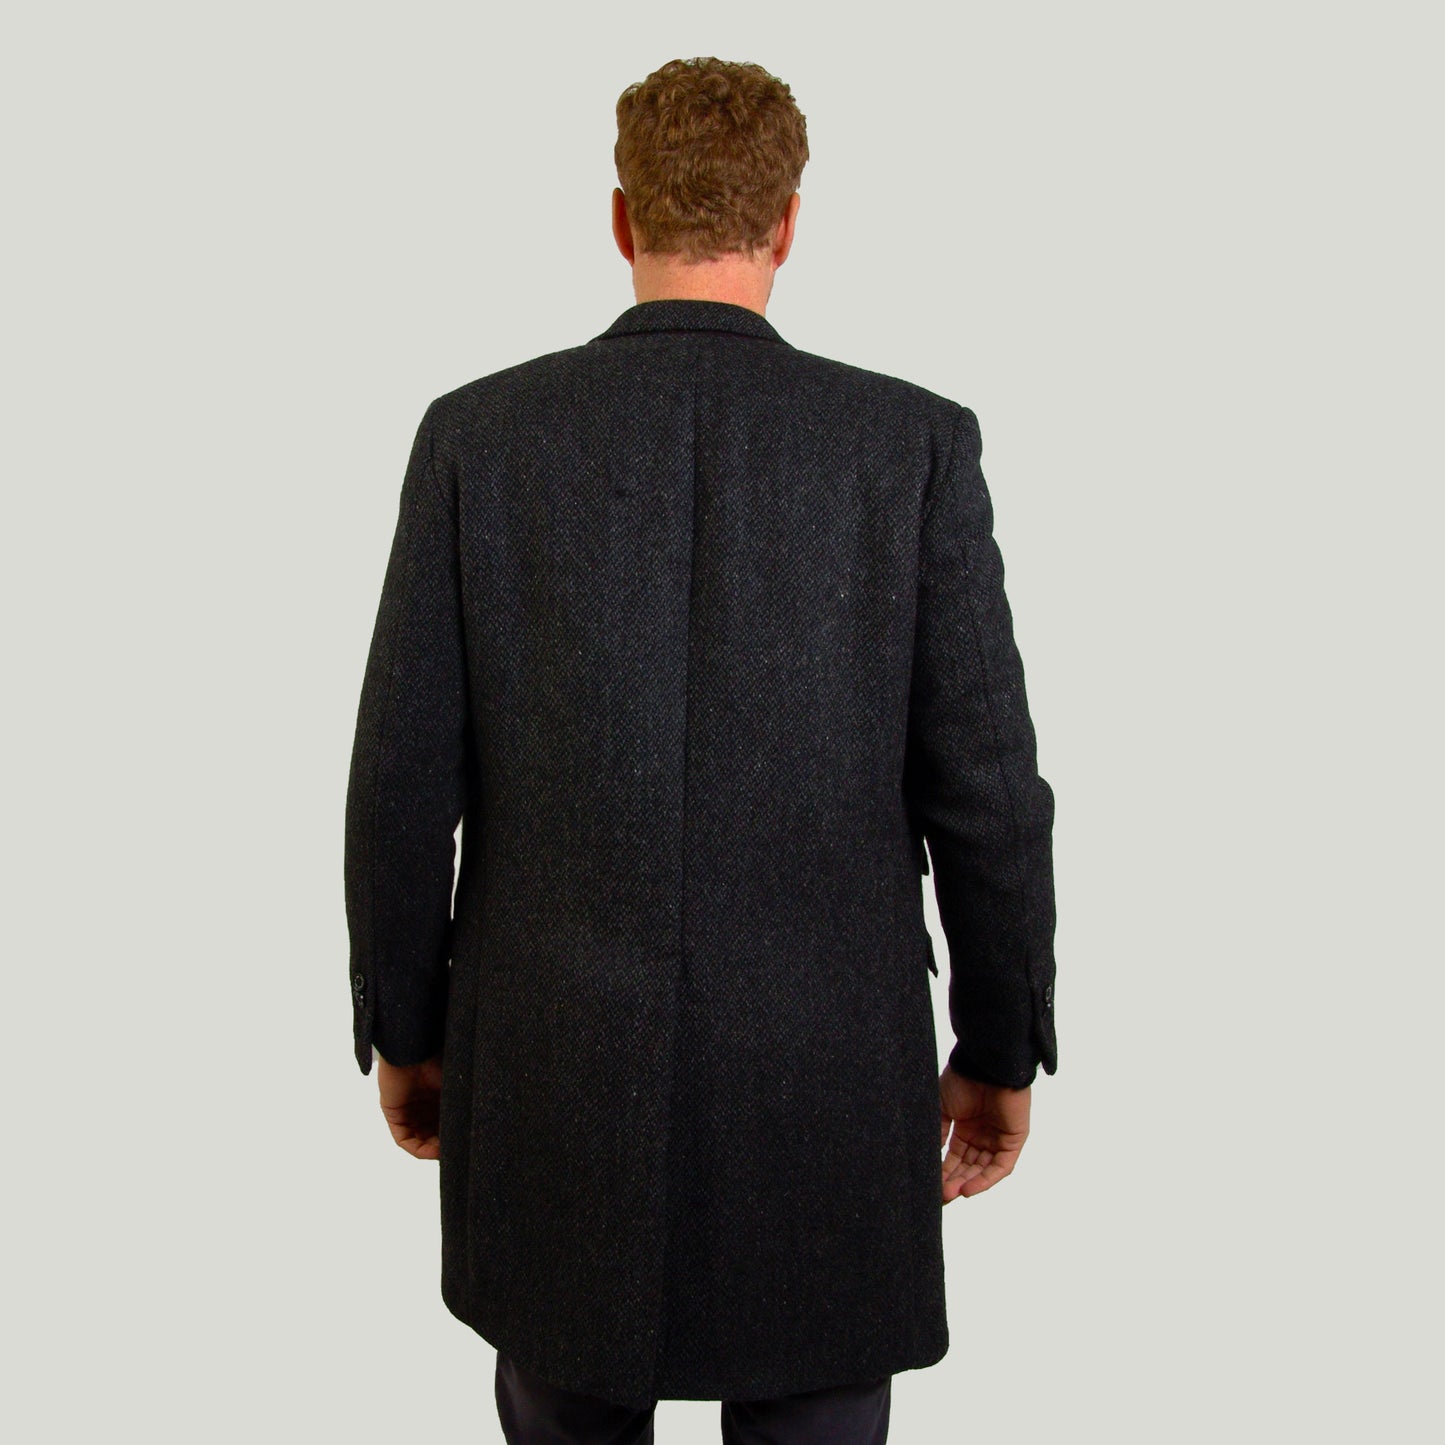 Men's Classic Coat in lamswool fabric